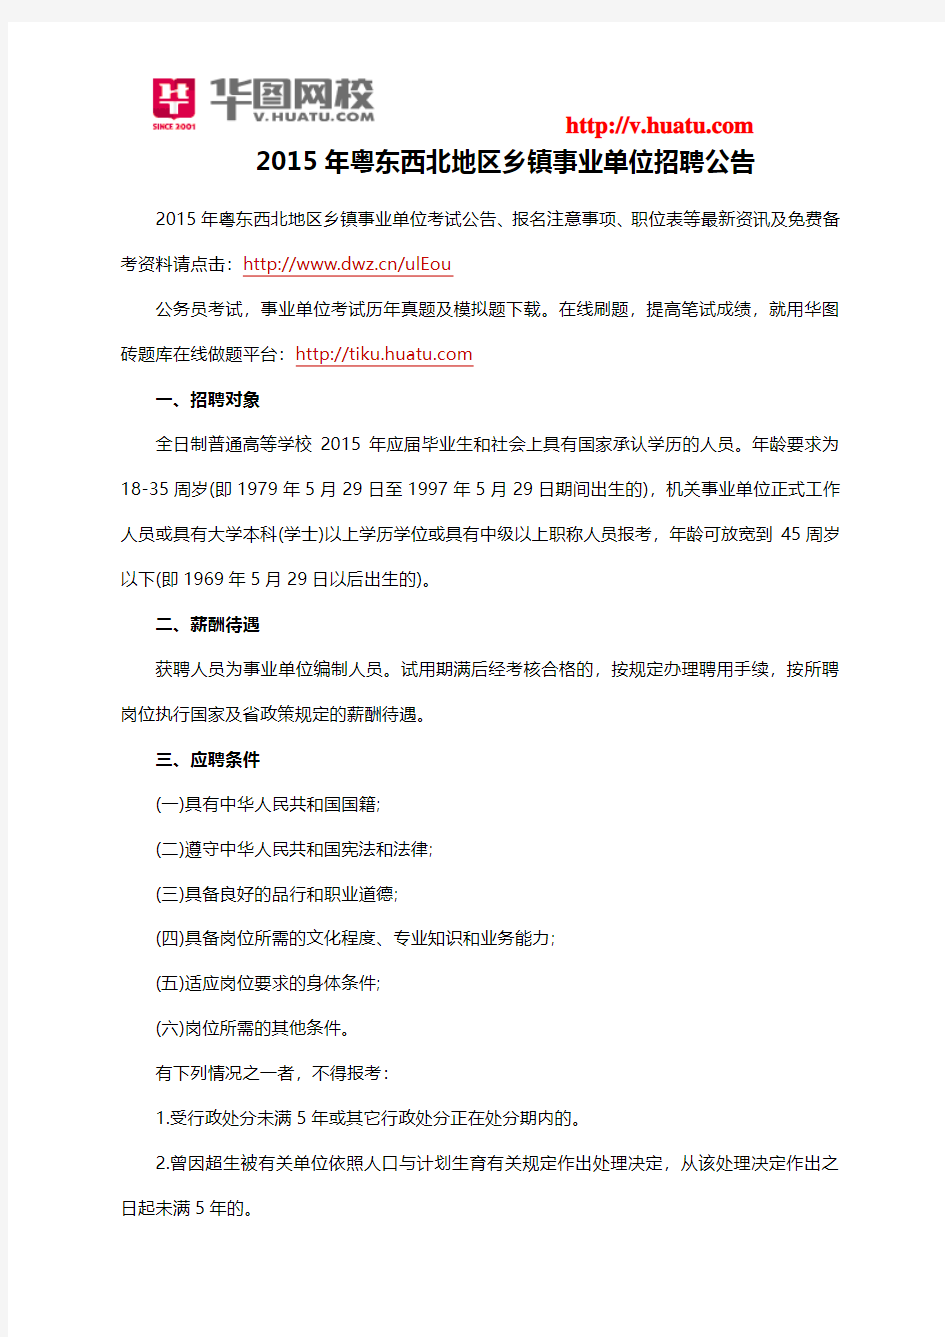 2015年粤东西北地区乡镇事业单位招聘公告